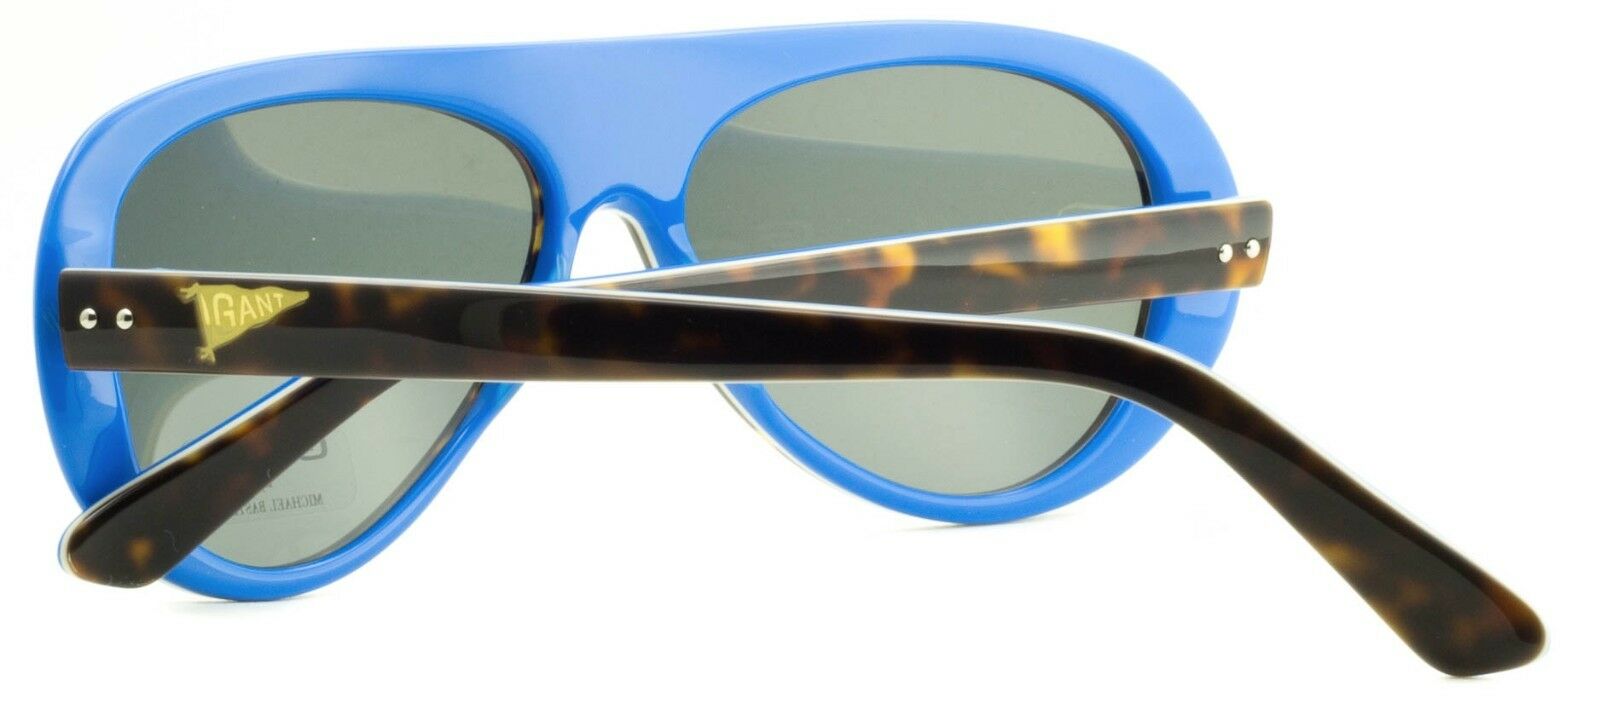 GANT by MICHAEL BASTIAN GS CHARLES TO-2 Sunglasses Shades Eyeglasses New - BNIB